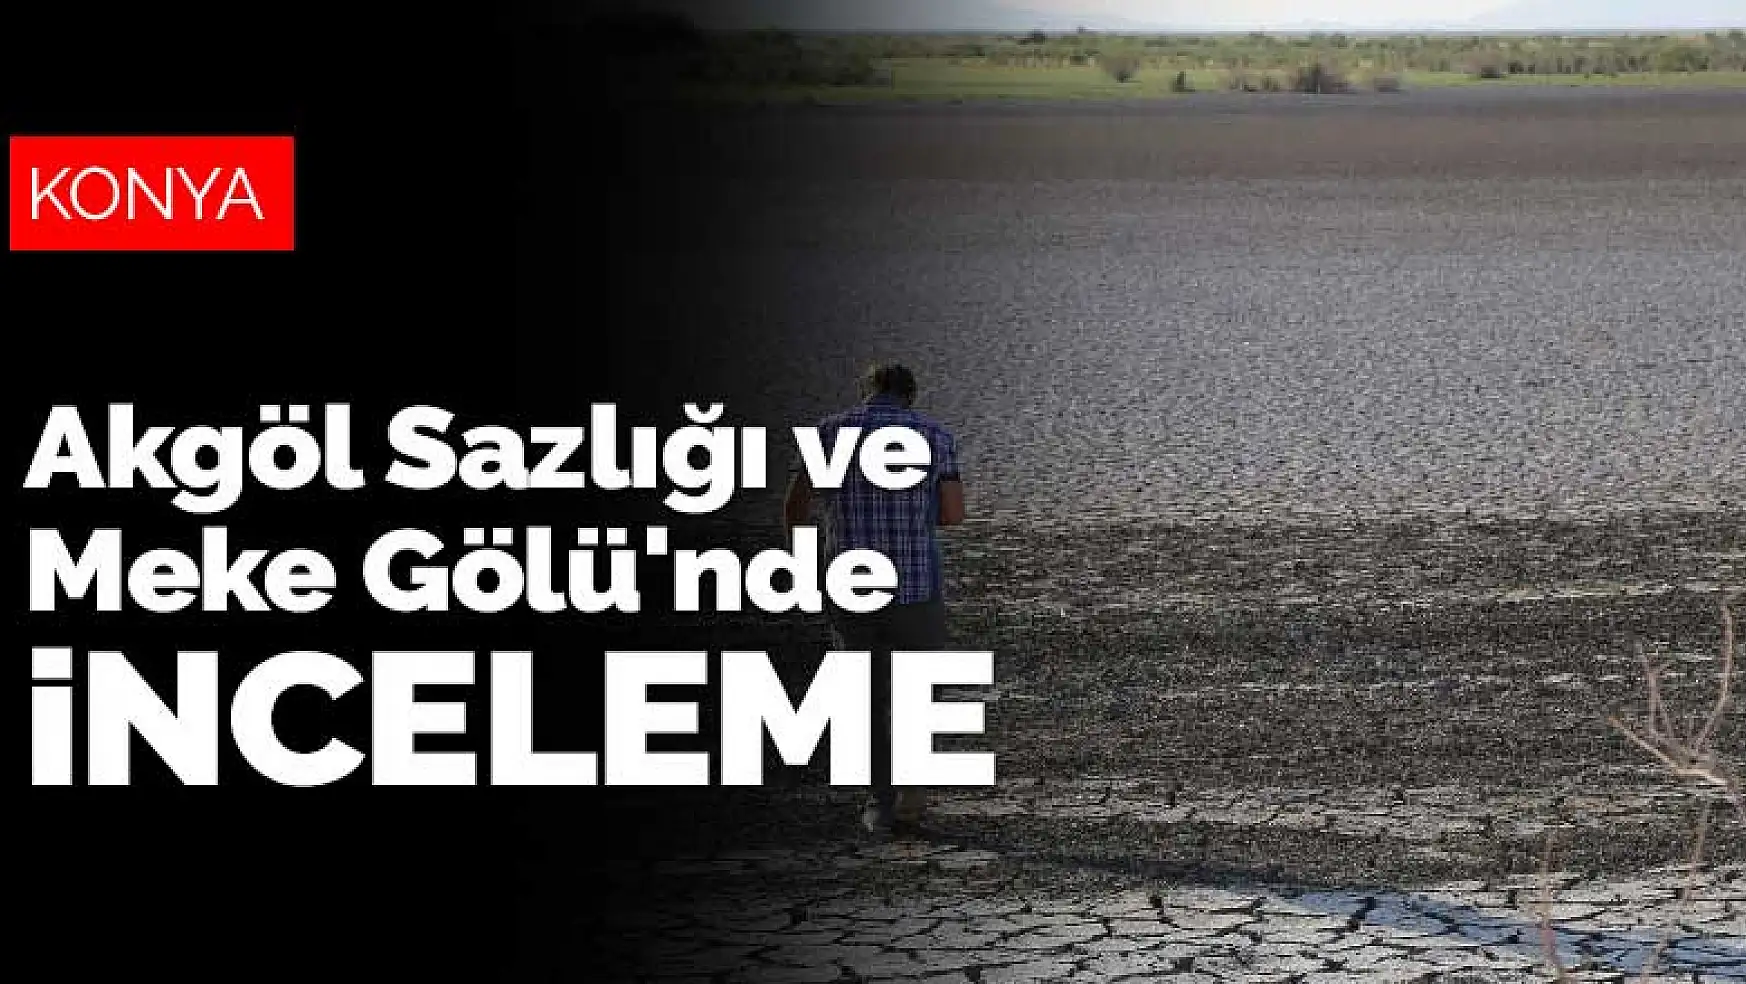 İklim değişikliğinden en çok etkilenen Konya'nın incileri Akgöl Sazlığı ve Meke Gölü'nde inceleme